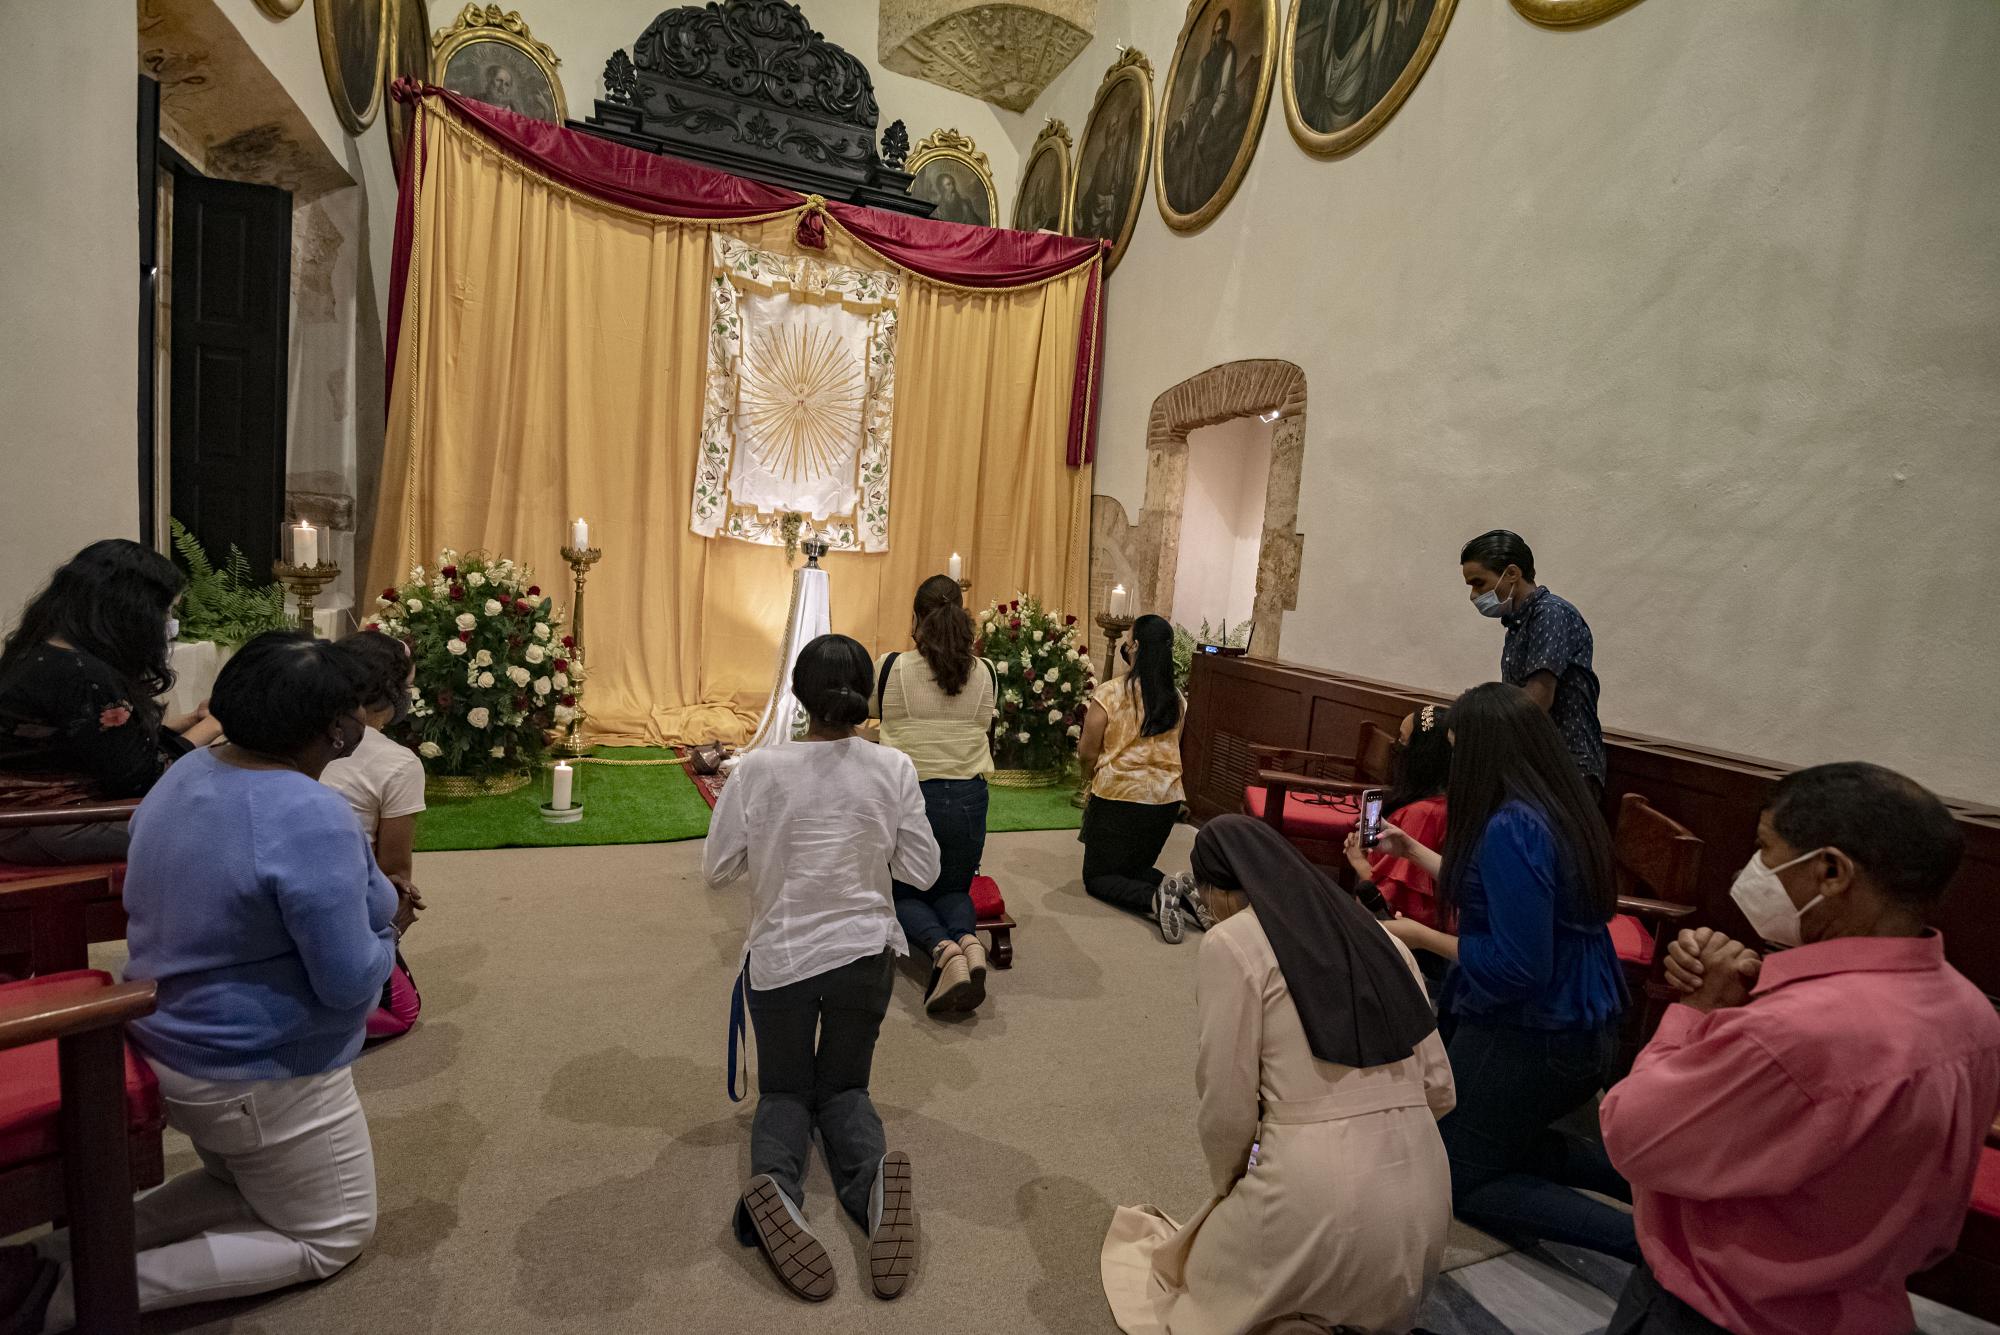 De rodillas y guardando el debido distanciamiento social, los creyentes de la fe católica oraron en la Iglesia Nuestra Señora de Las Mercedes (Foto: Félix León / Diario Libre)